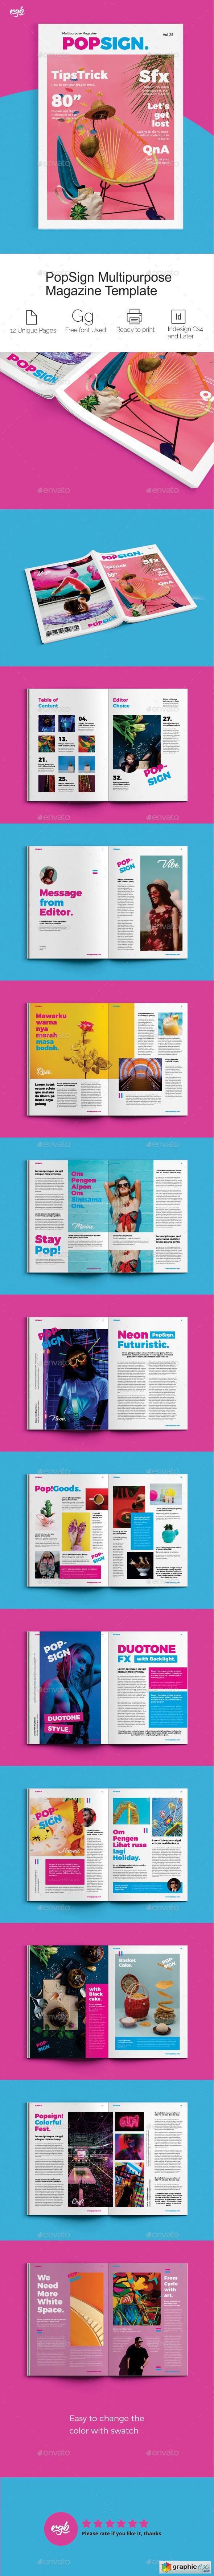 Popsign Multipurpose Magazine